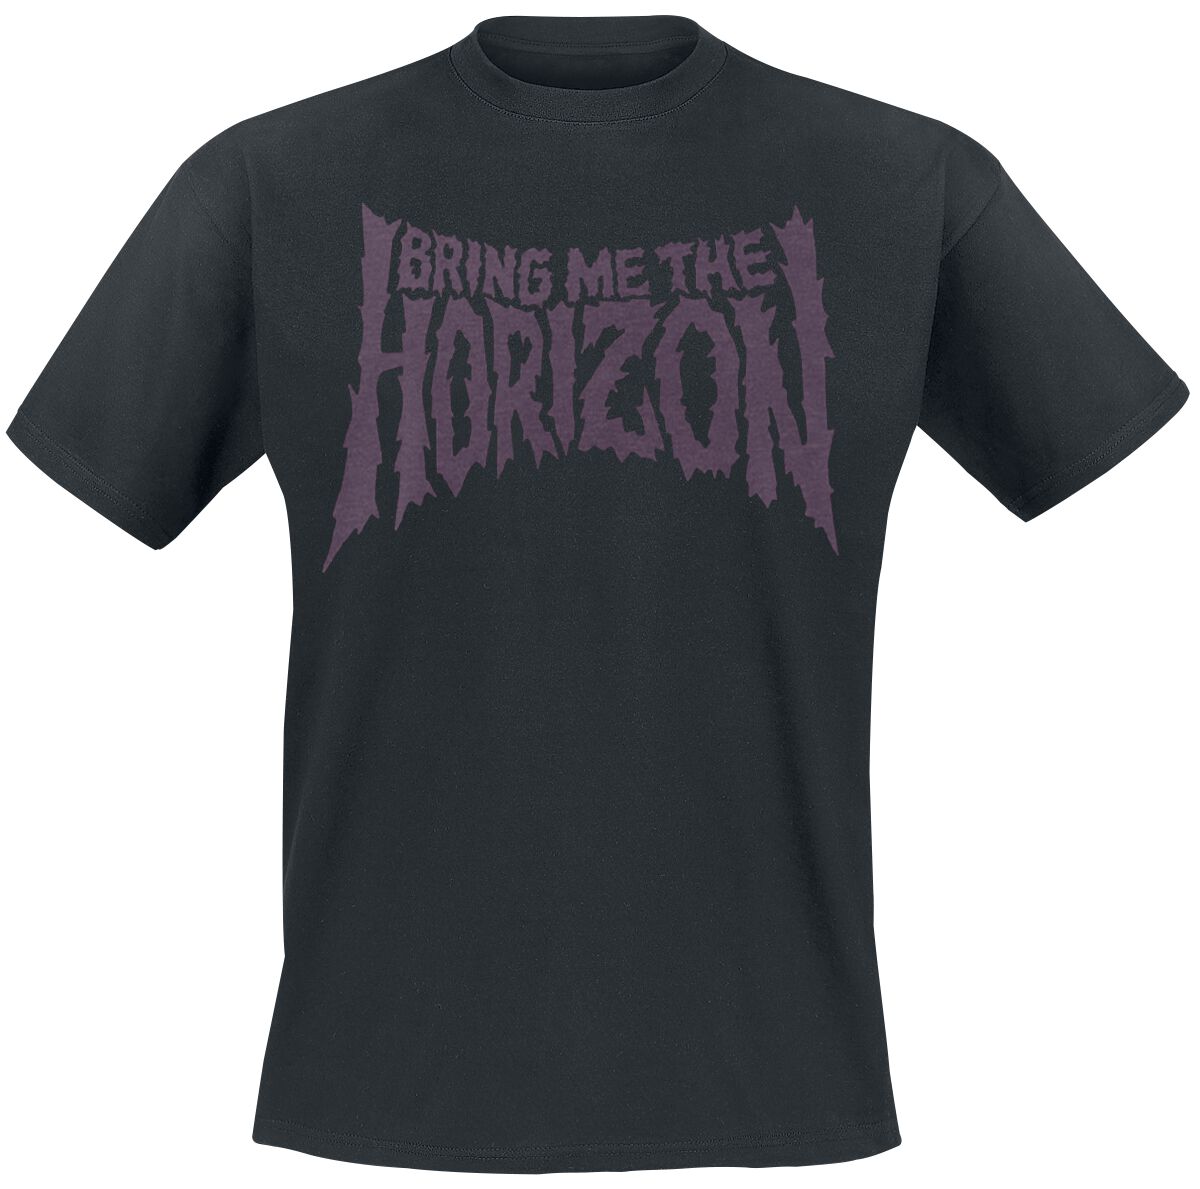 Bring Me The Horizon T-Shirt - Reaper - S bis 3XL - für Männer - Größe M - schwarz  - Lizenziertes Merchandise!